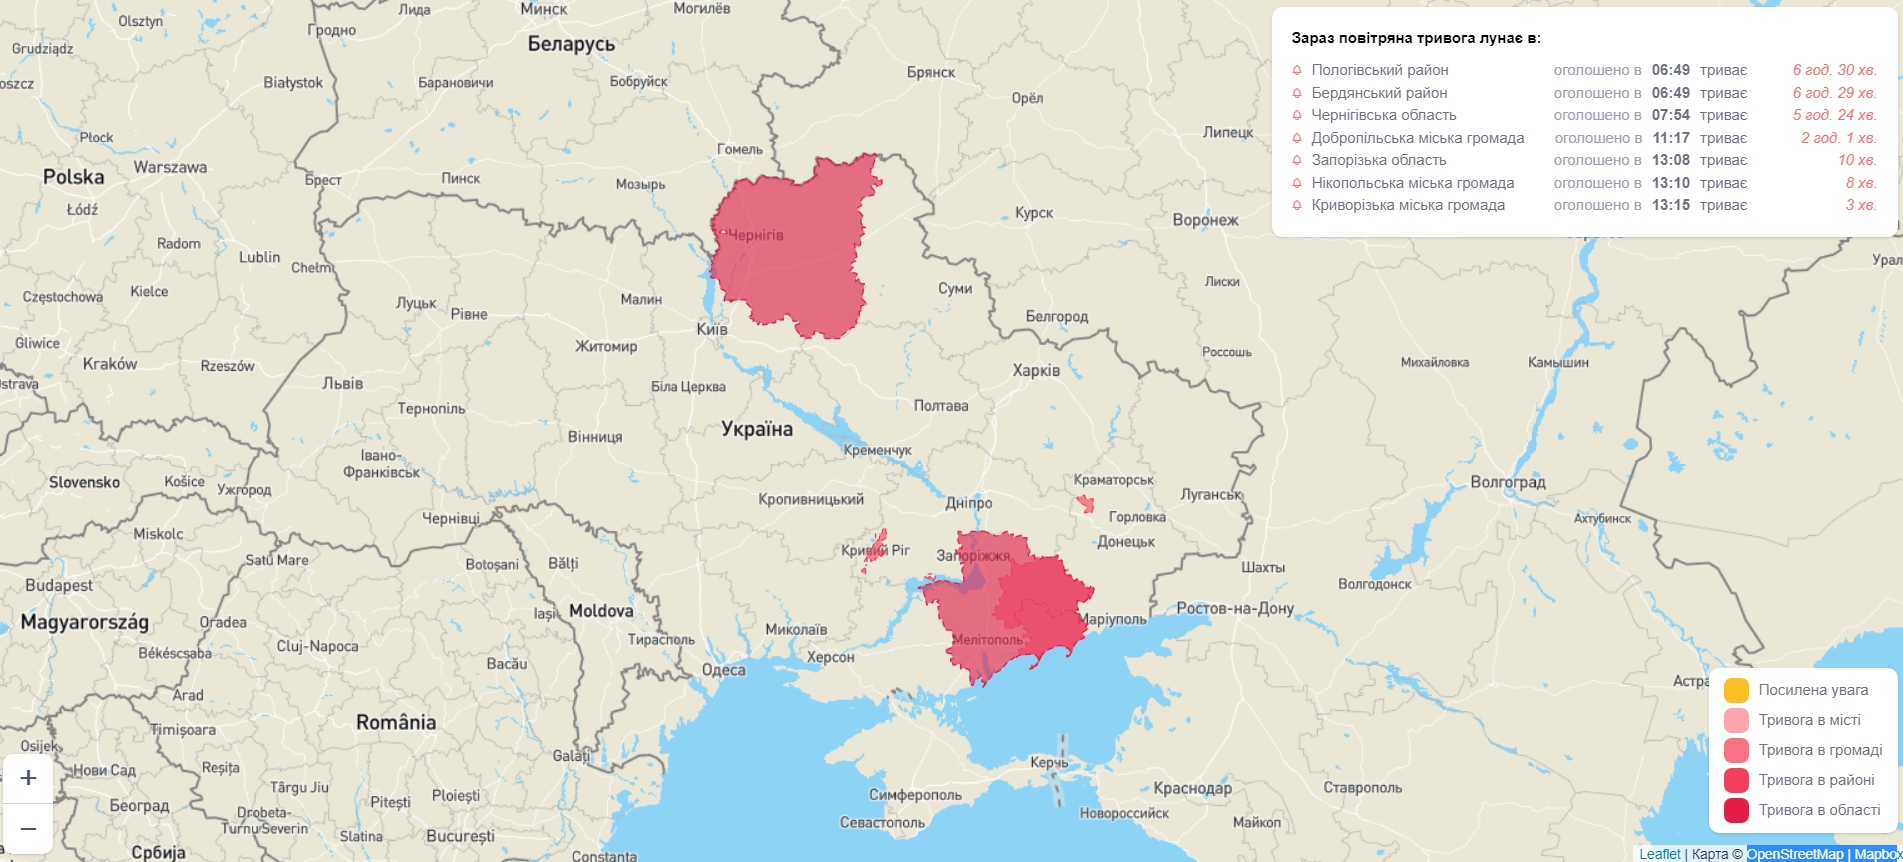 Появились сайты для отслеживания воздушных тревог по всей Украине: как ониработают